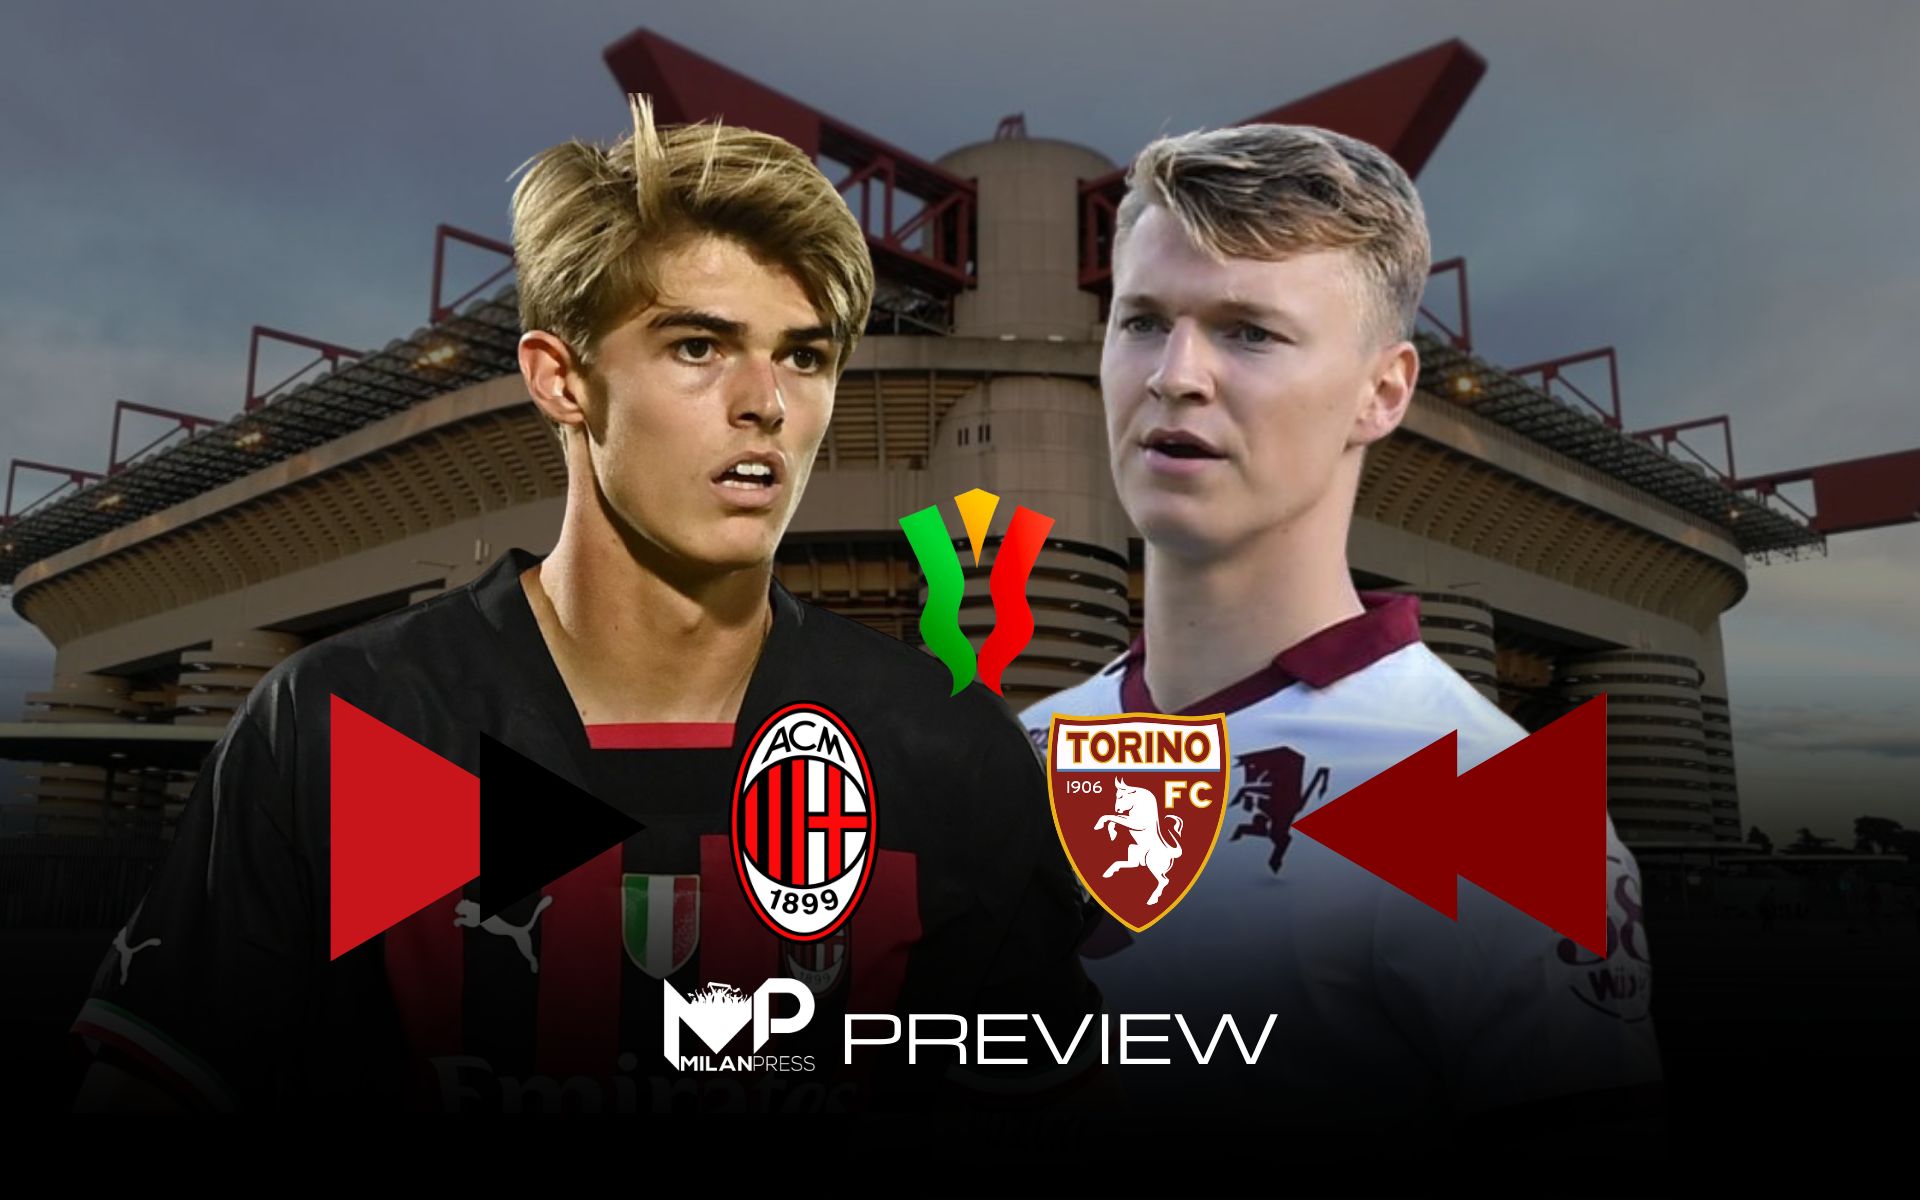 Milan-Torino Coppa Italia Preview - MilanPress, robe delll'altro diavolo